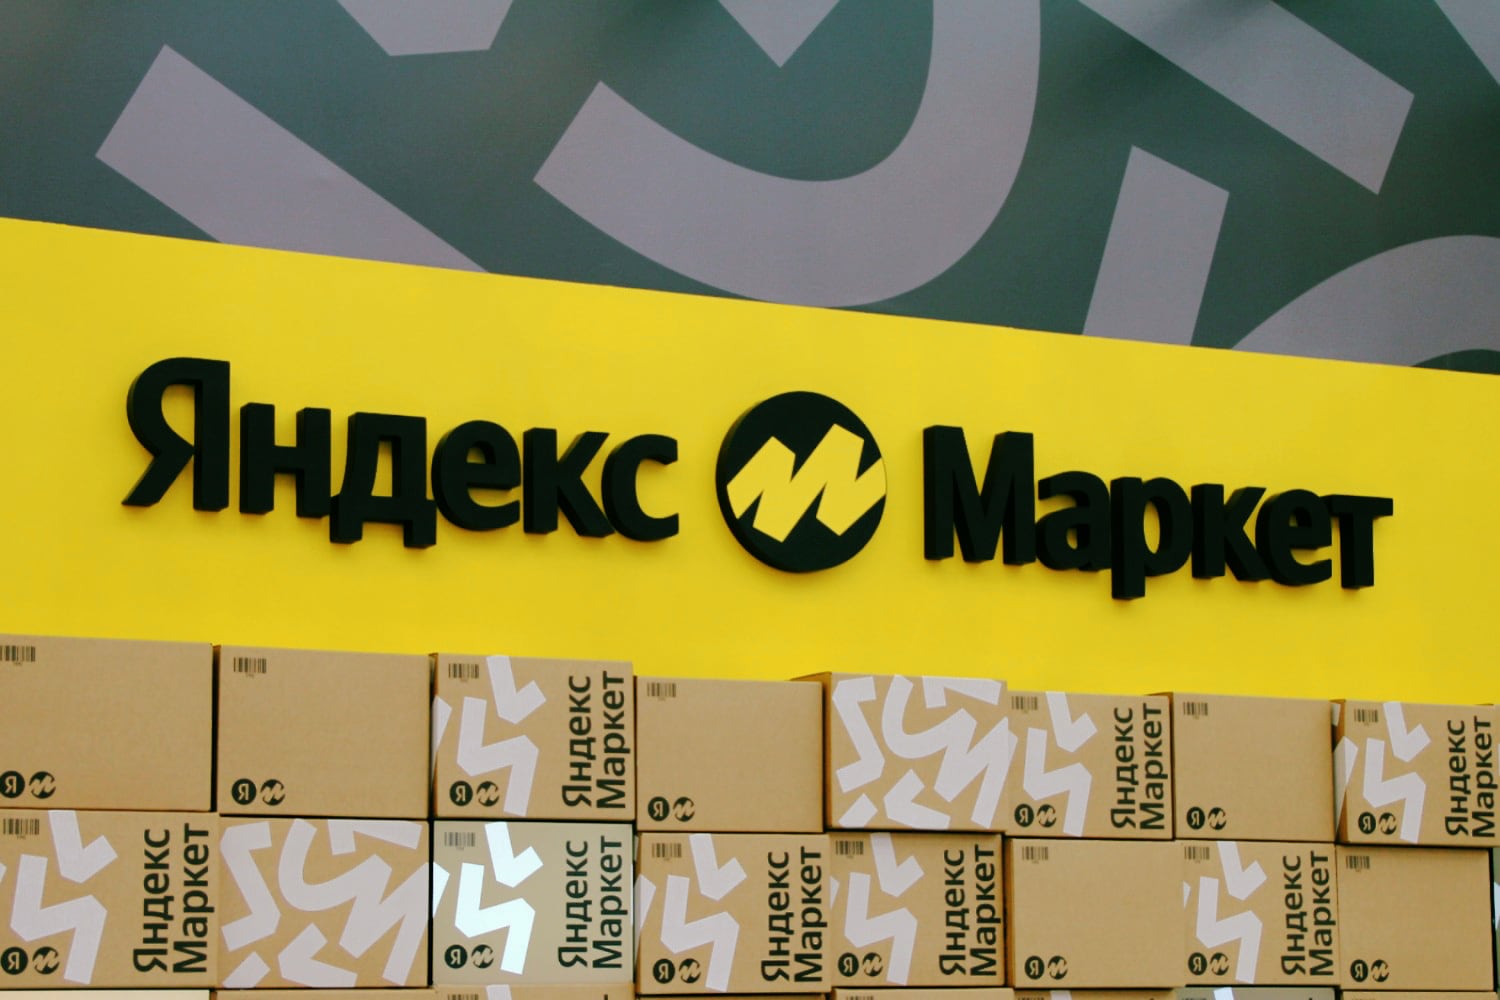 Яндекс.Маркет запустил сервис по выкупу и перепродаже подержанных товаров. Например, гаджеты и автомобильные шины